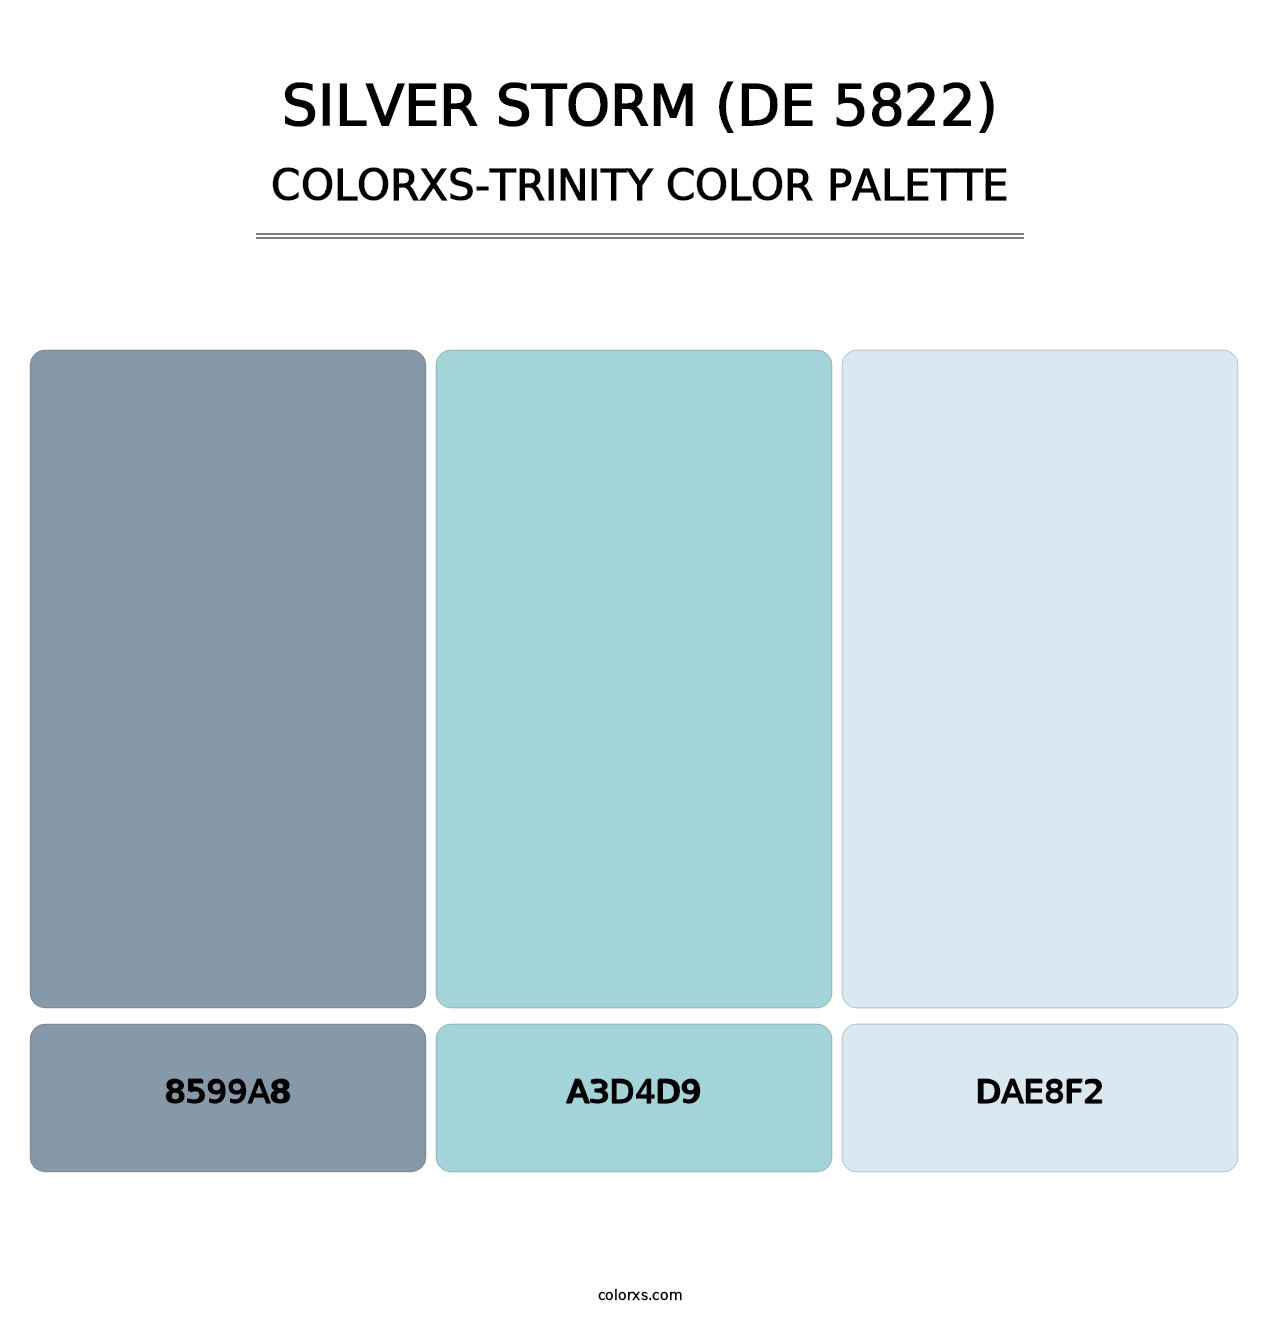 Silver Storm (DE 5822) - Colorxs Trinity Palette